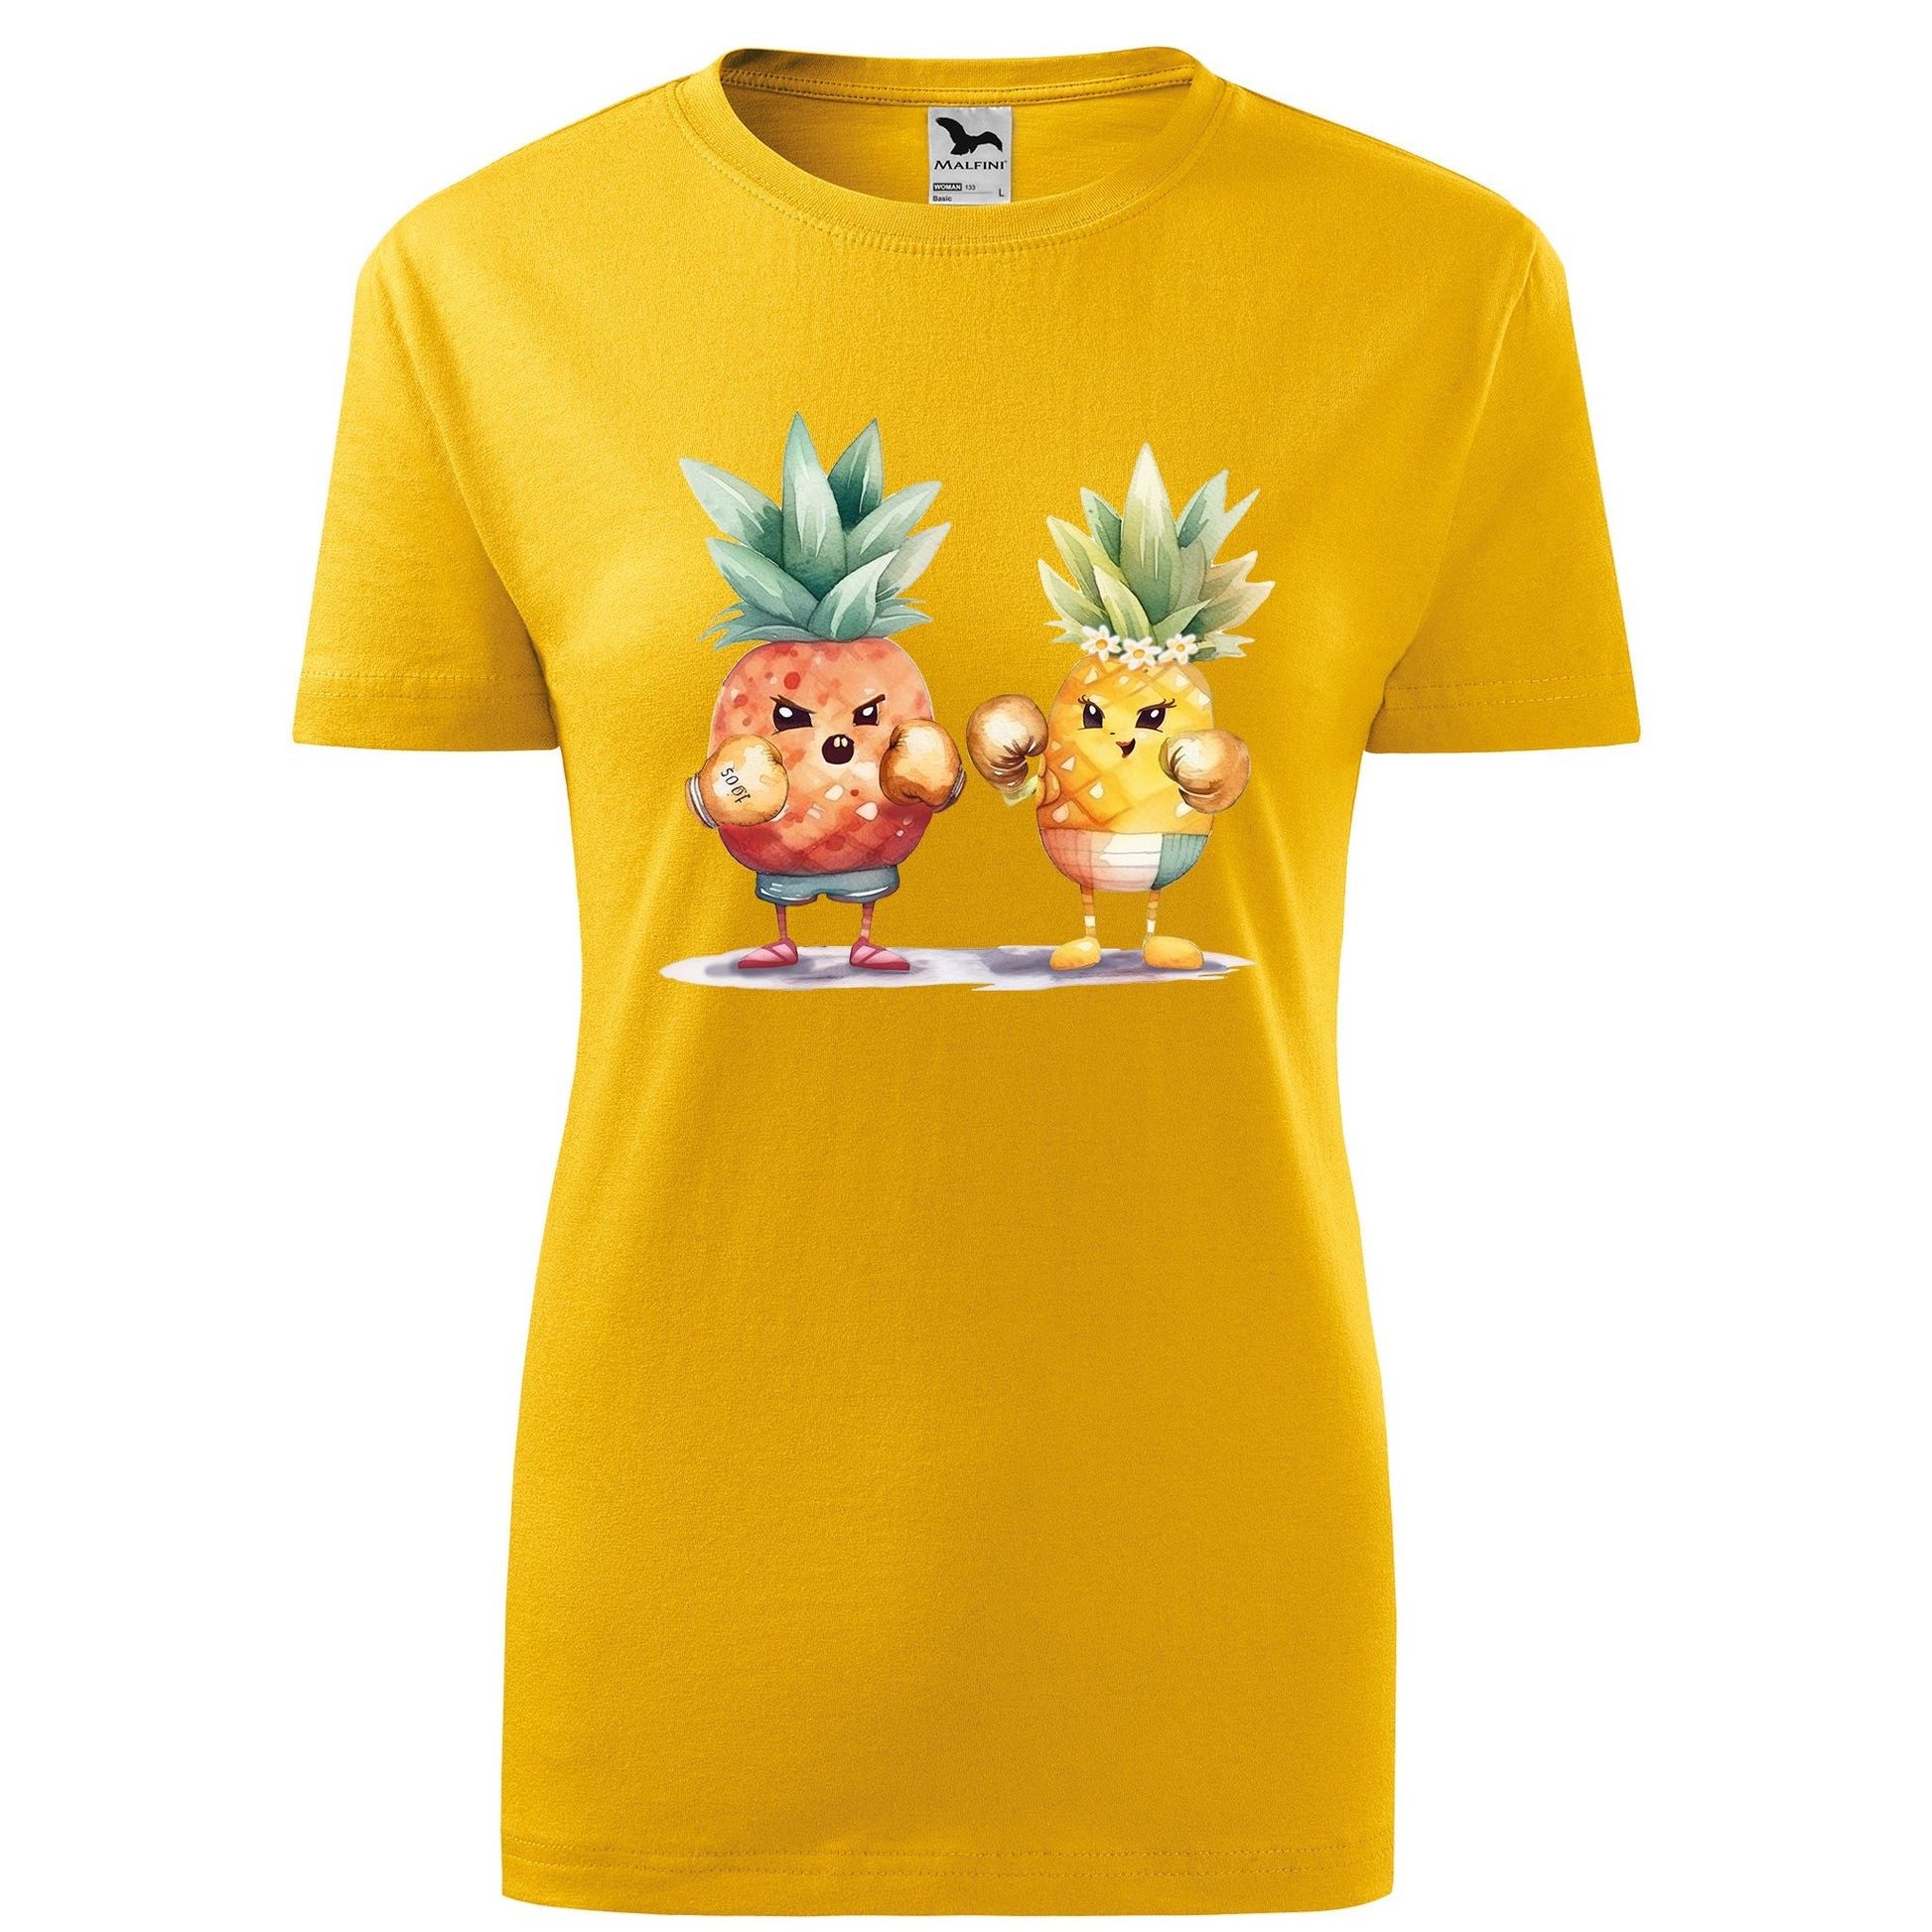 Boxing pineapples t-shirt - rvdesignprint